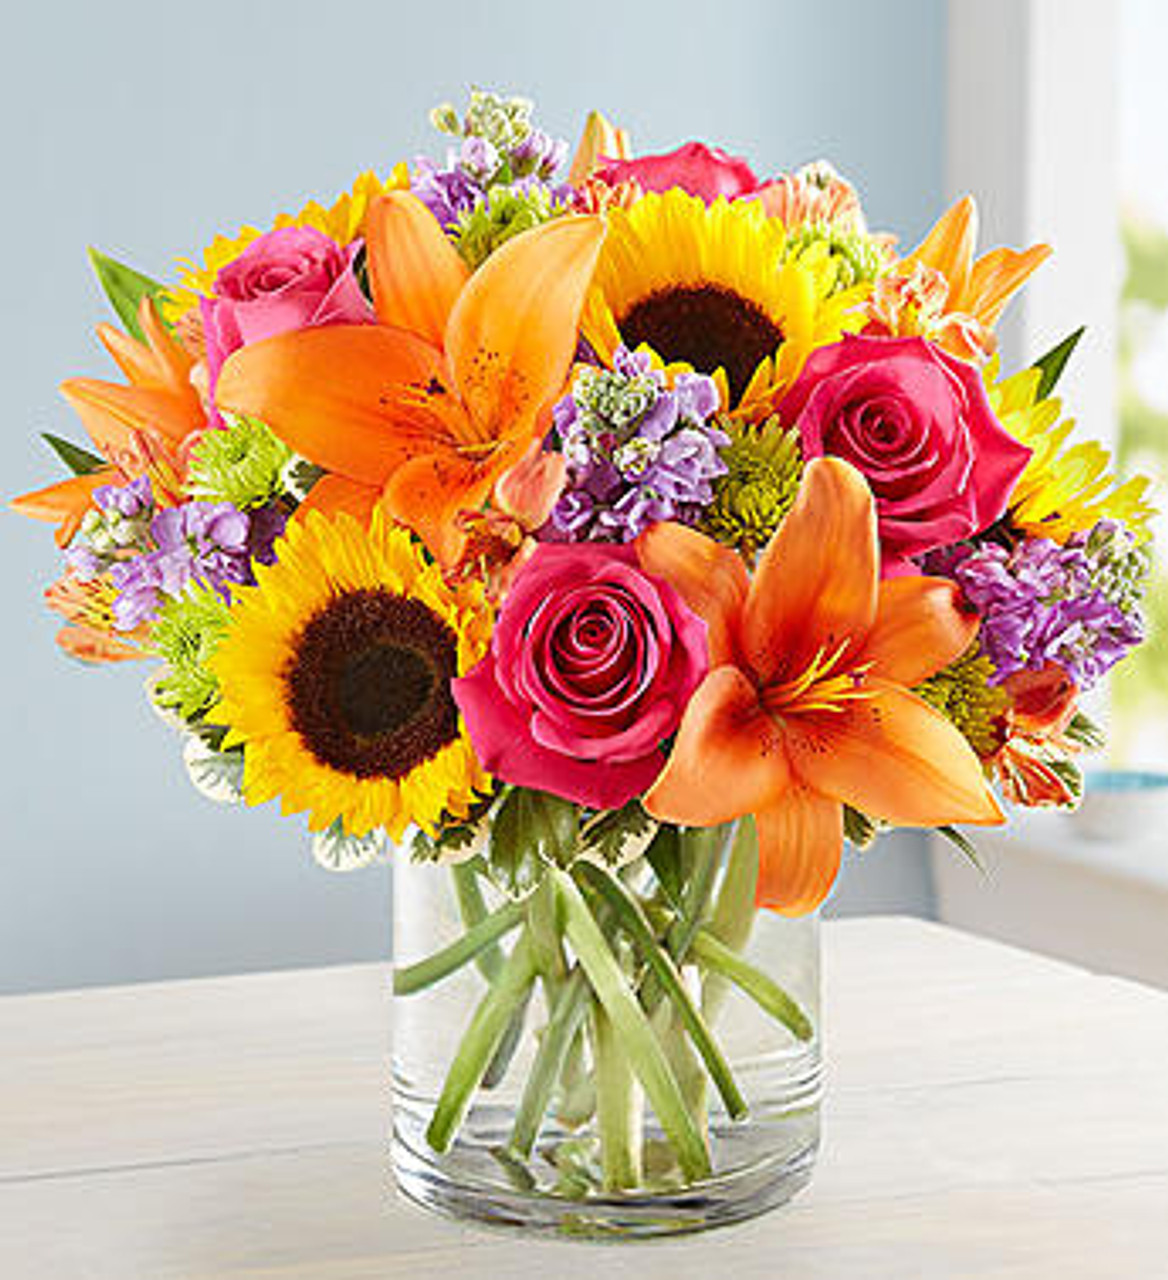 Vases for Flowers